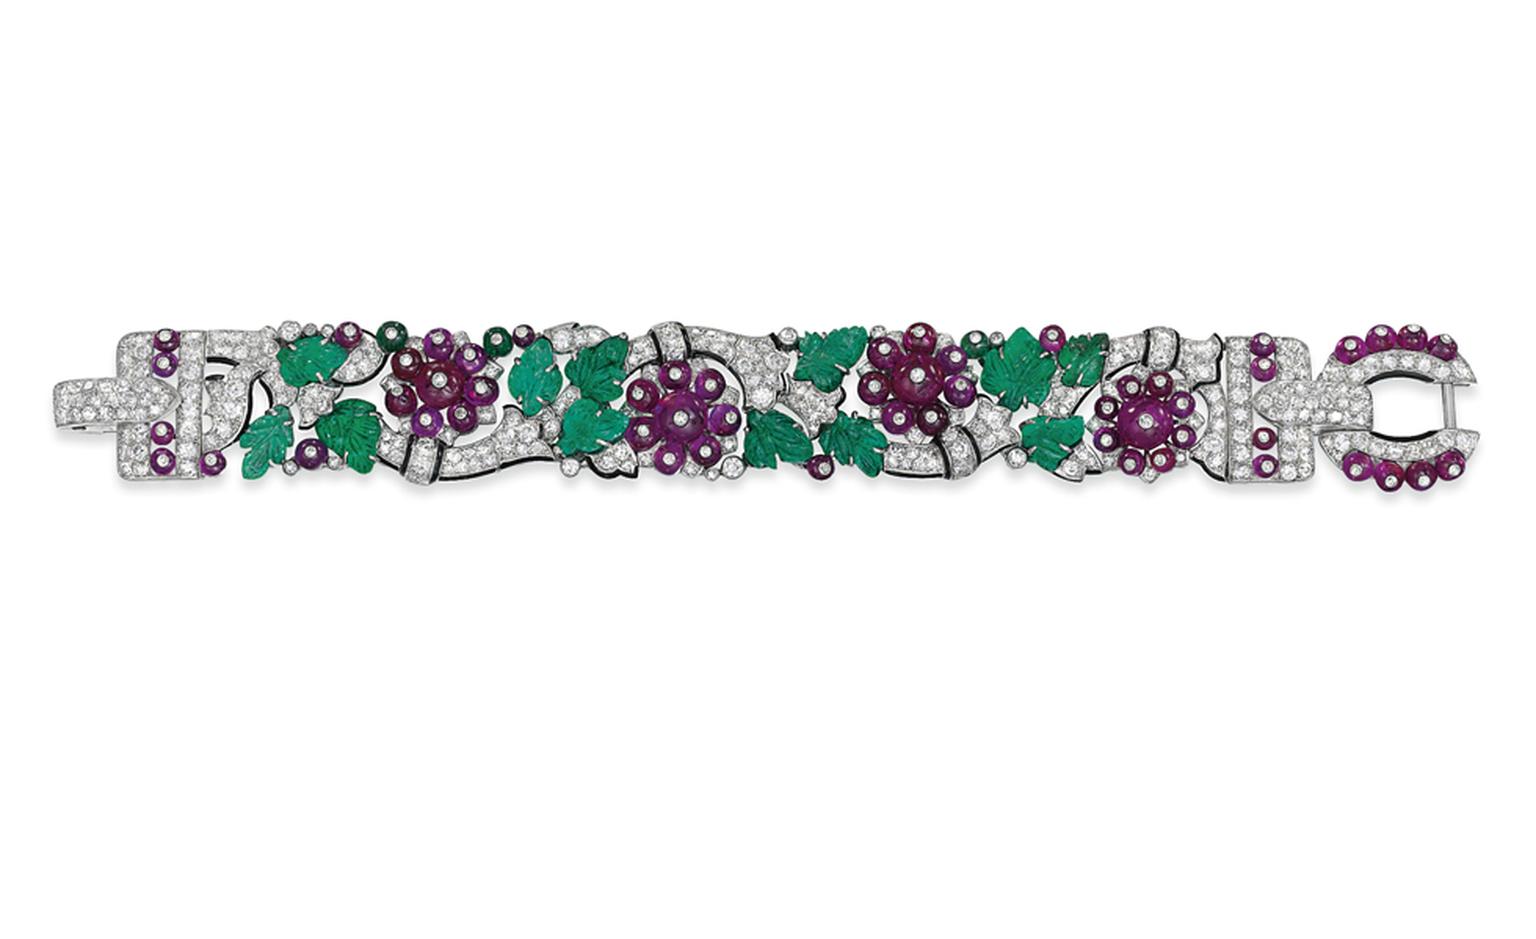 Lot 160. An exceptional art deco 'Tuttie Frutti' bracelet, by Cartier. Estimate £300,000-£400,000. SOLD FOR £1,150,050